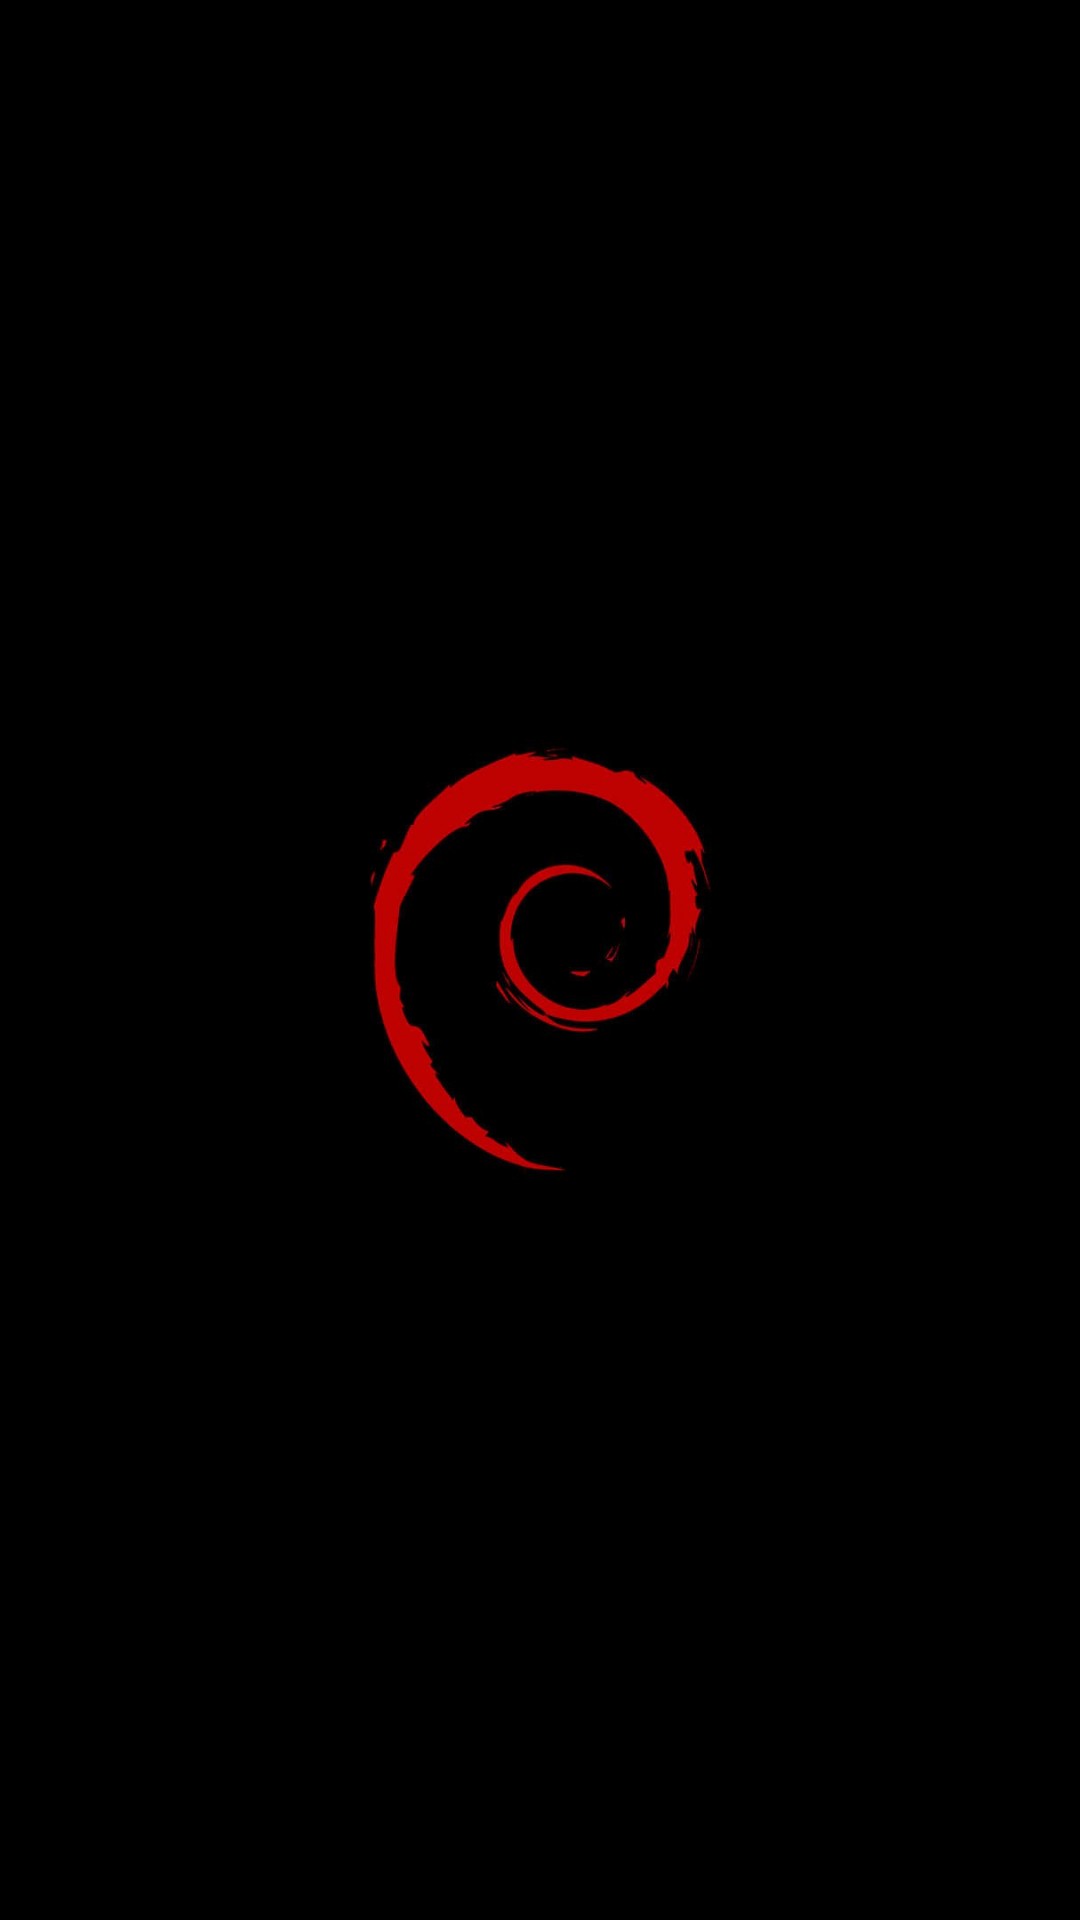 Linux Debian Wallpaper for LG G2